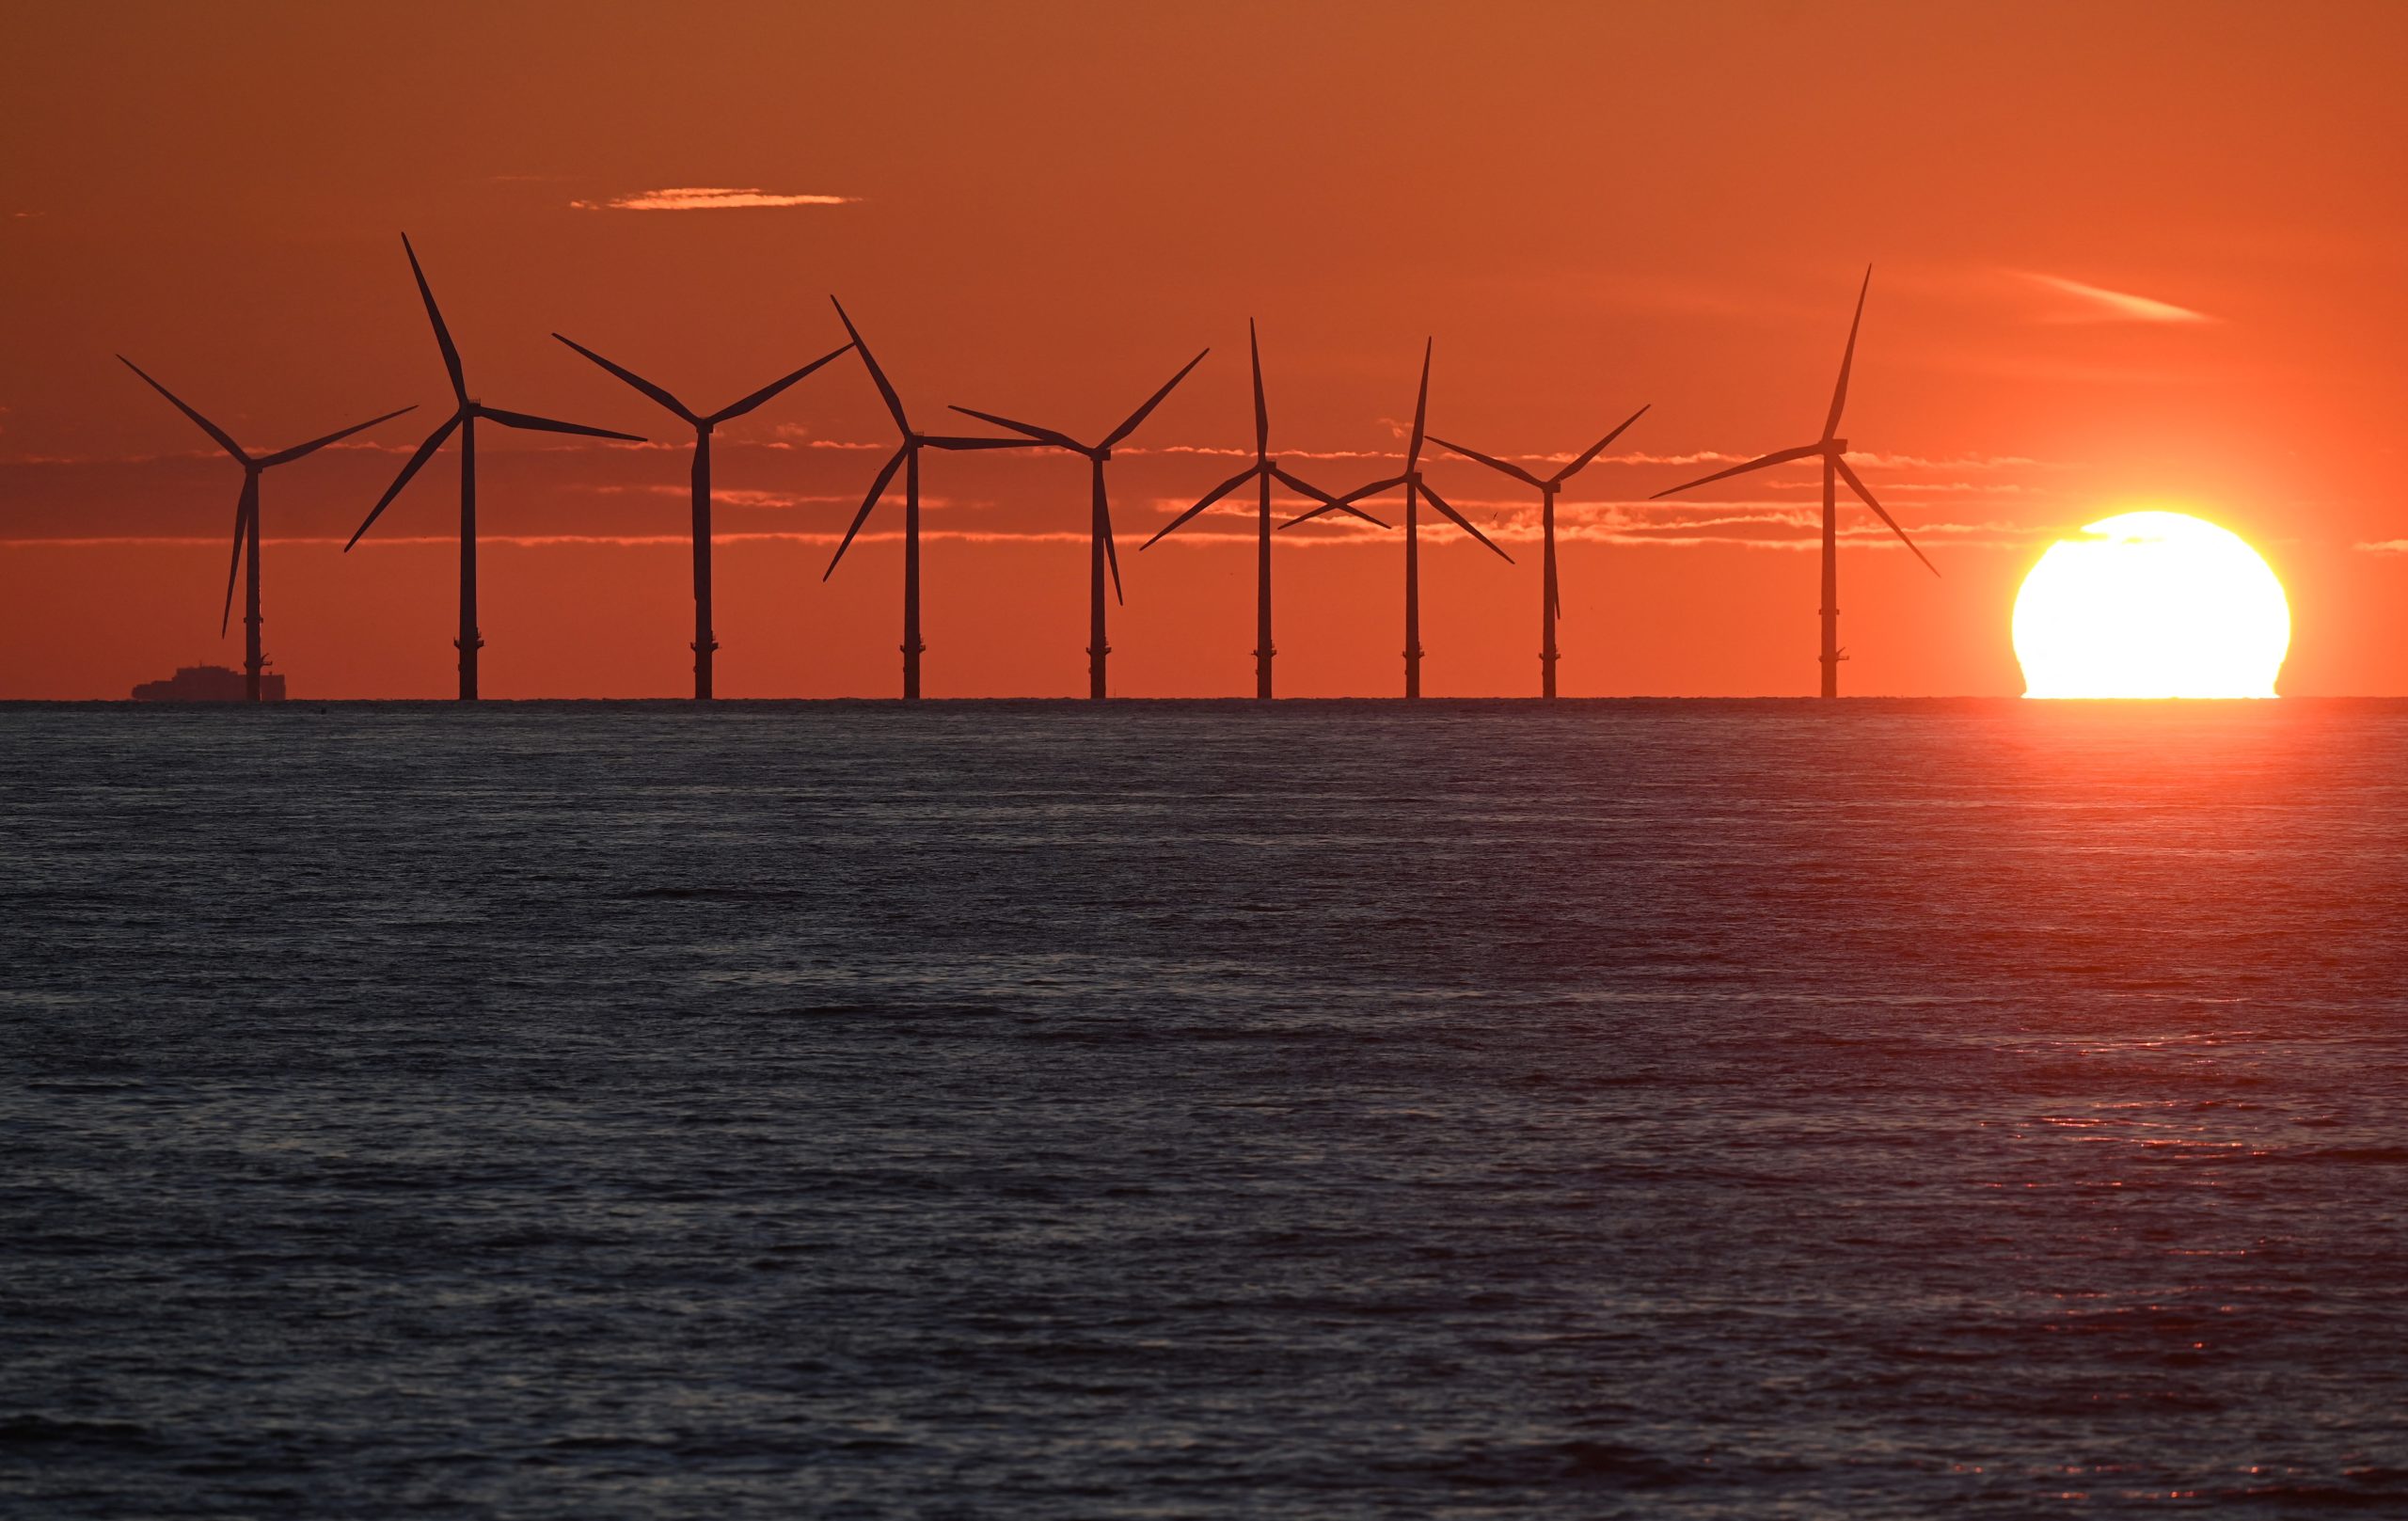 De capaciteit van windparken in de Noordzee zal verdrievoudigen tot 5,8 GW in 2030